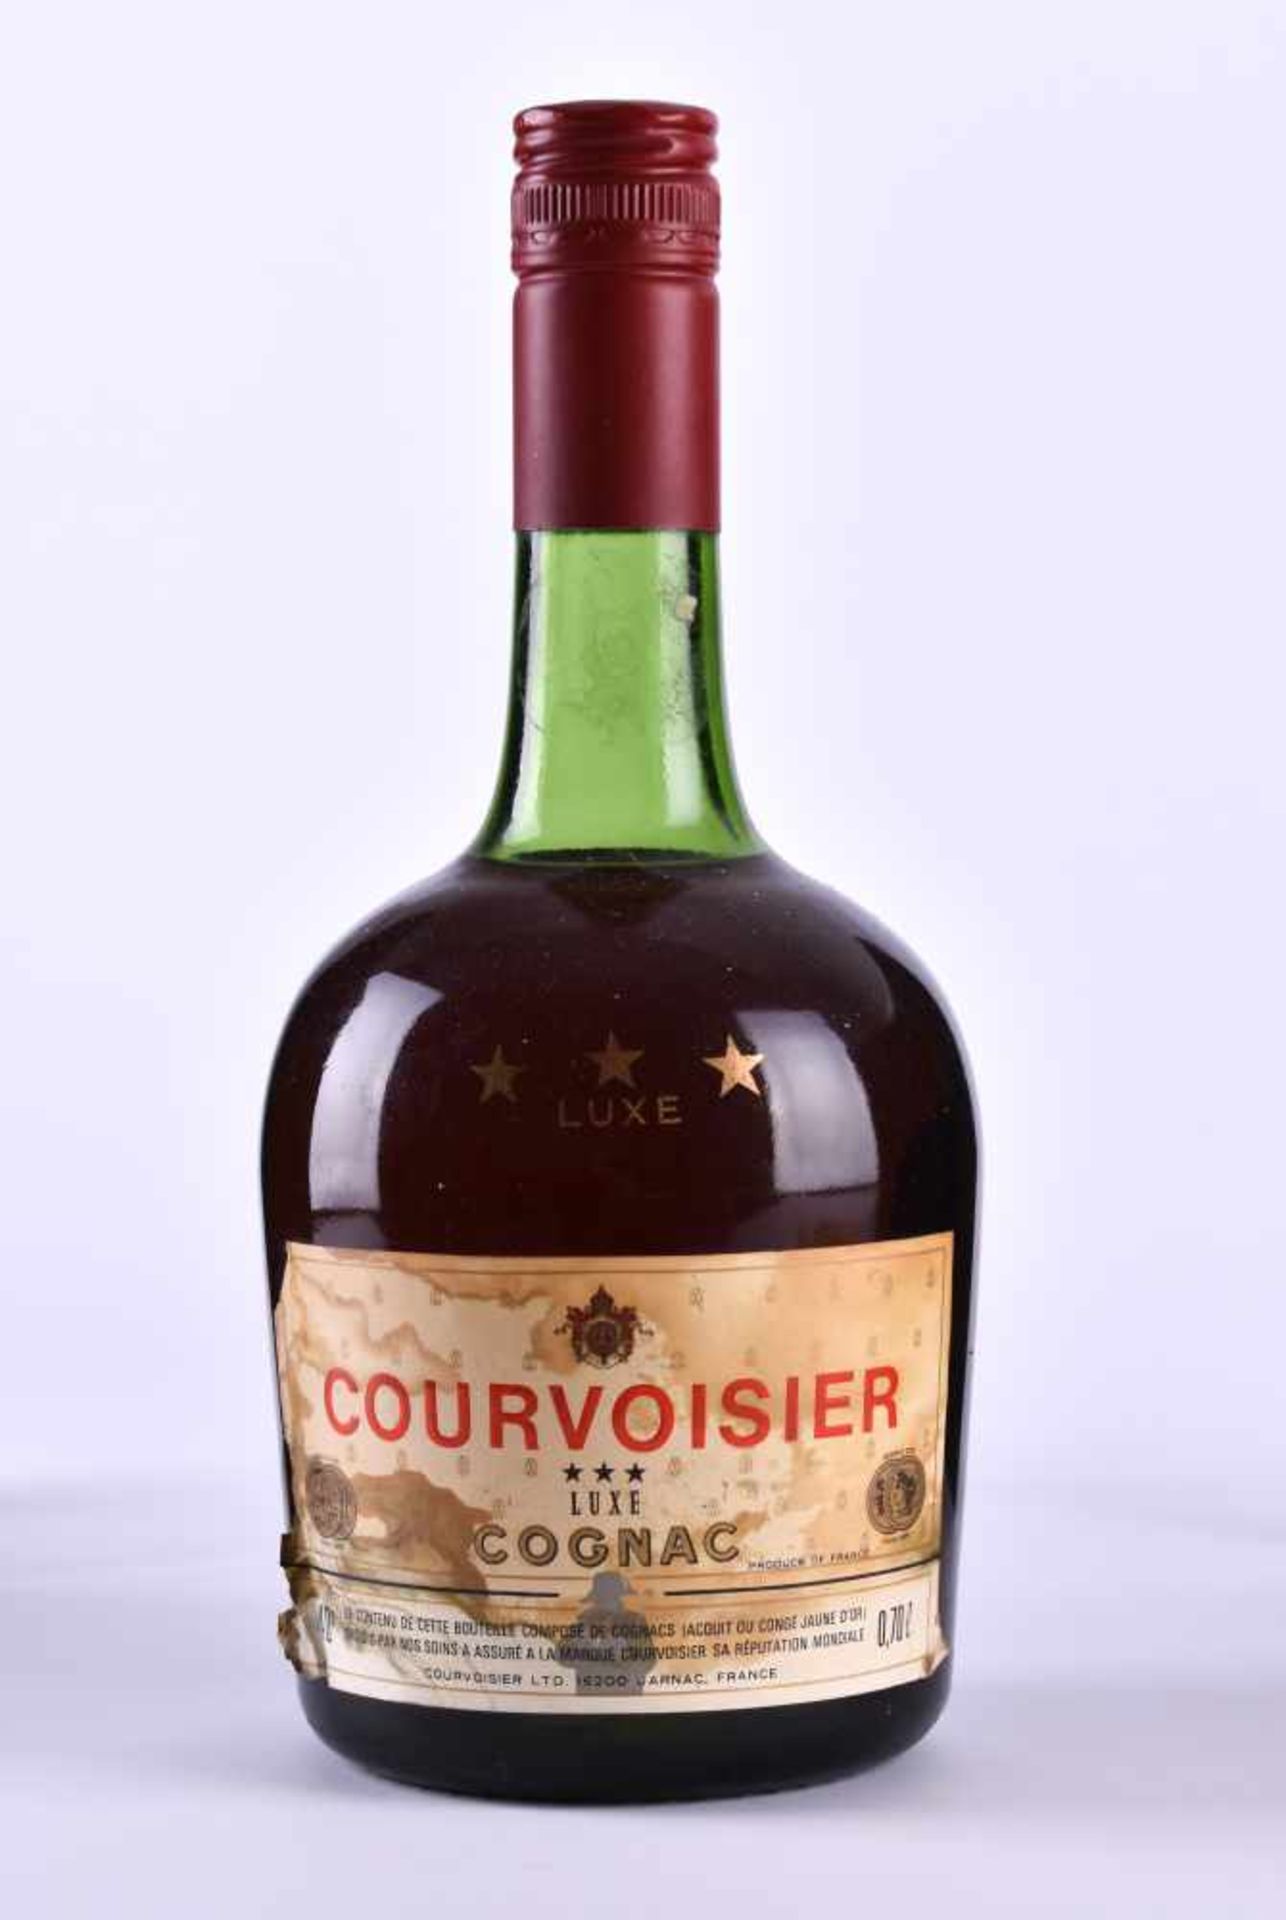 Courvoisier Luxe cognac around 1970